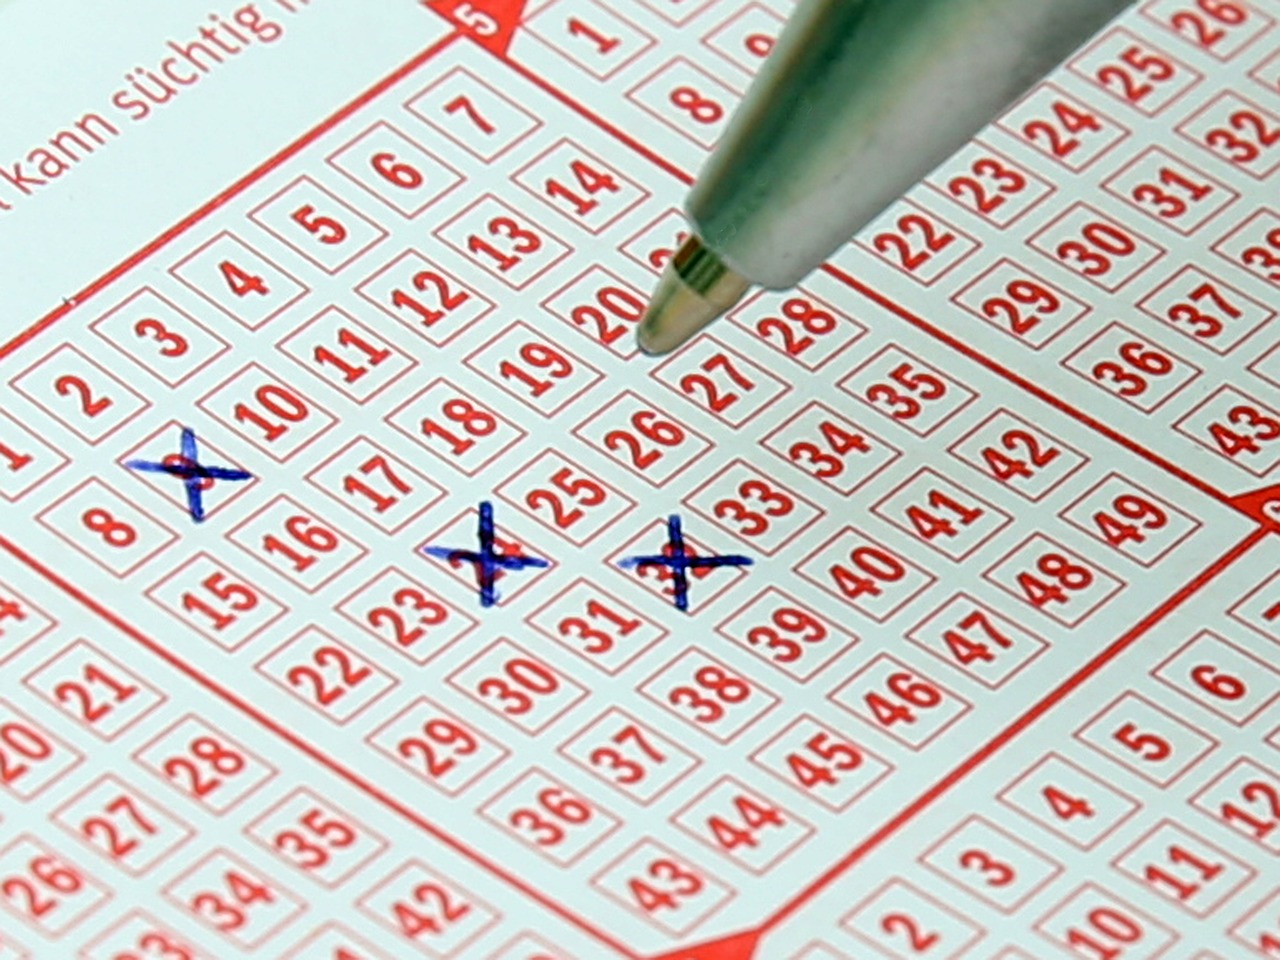 Lotto, Loterijos Bilietas, Sąskaitą, Pelnas, Sumokėti, Azartiniai Lošimai, Laimėti, Viltis, Milijonierius, Akligatvis